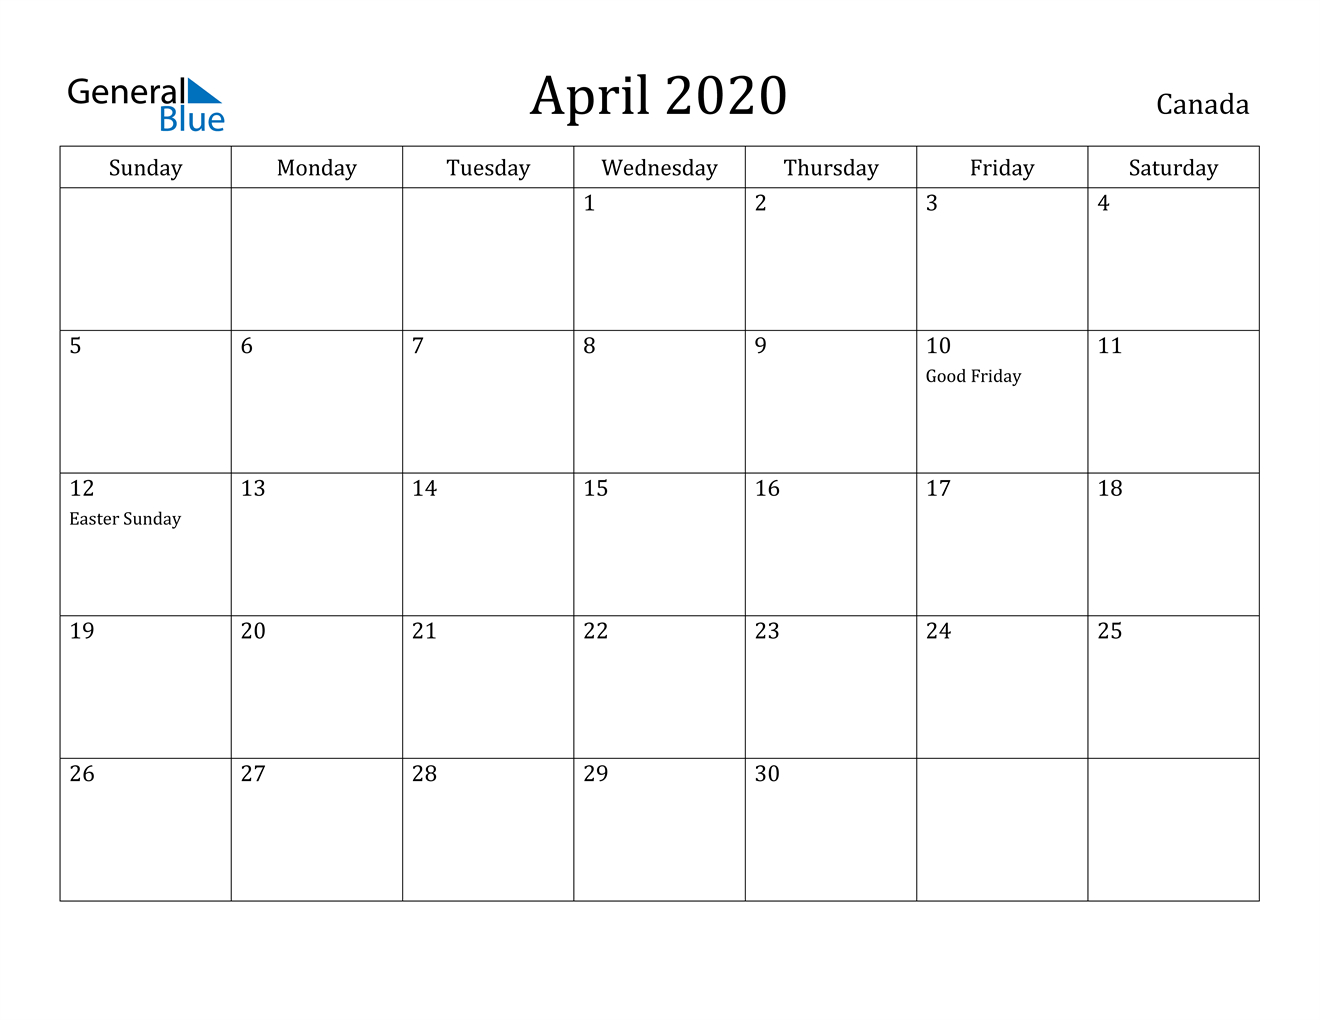 April 2020 Calendar - Canada